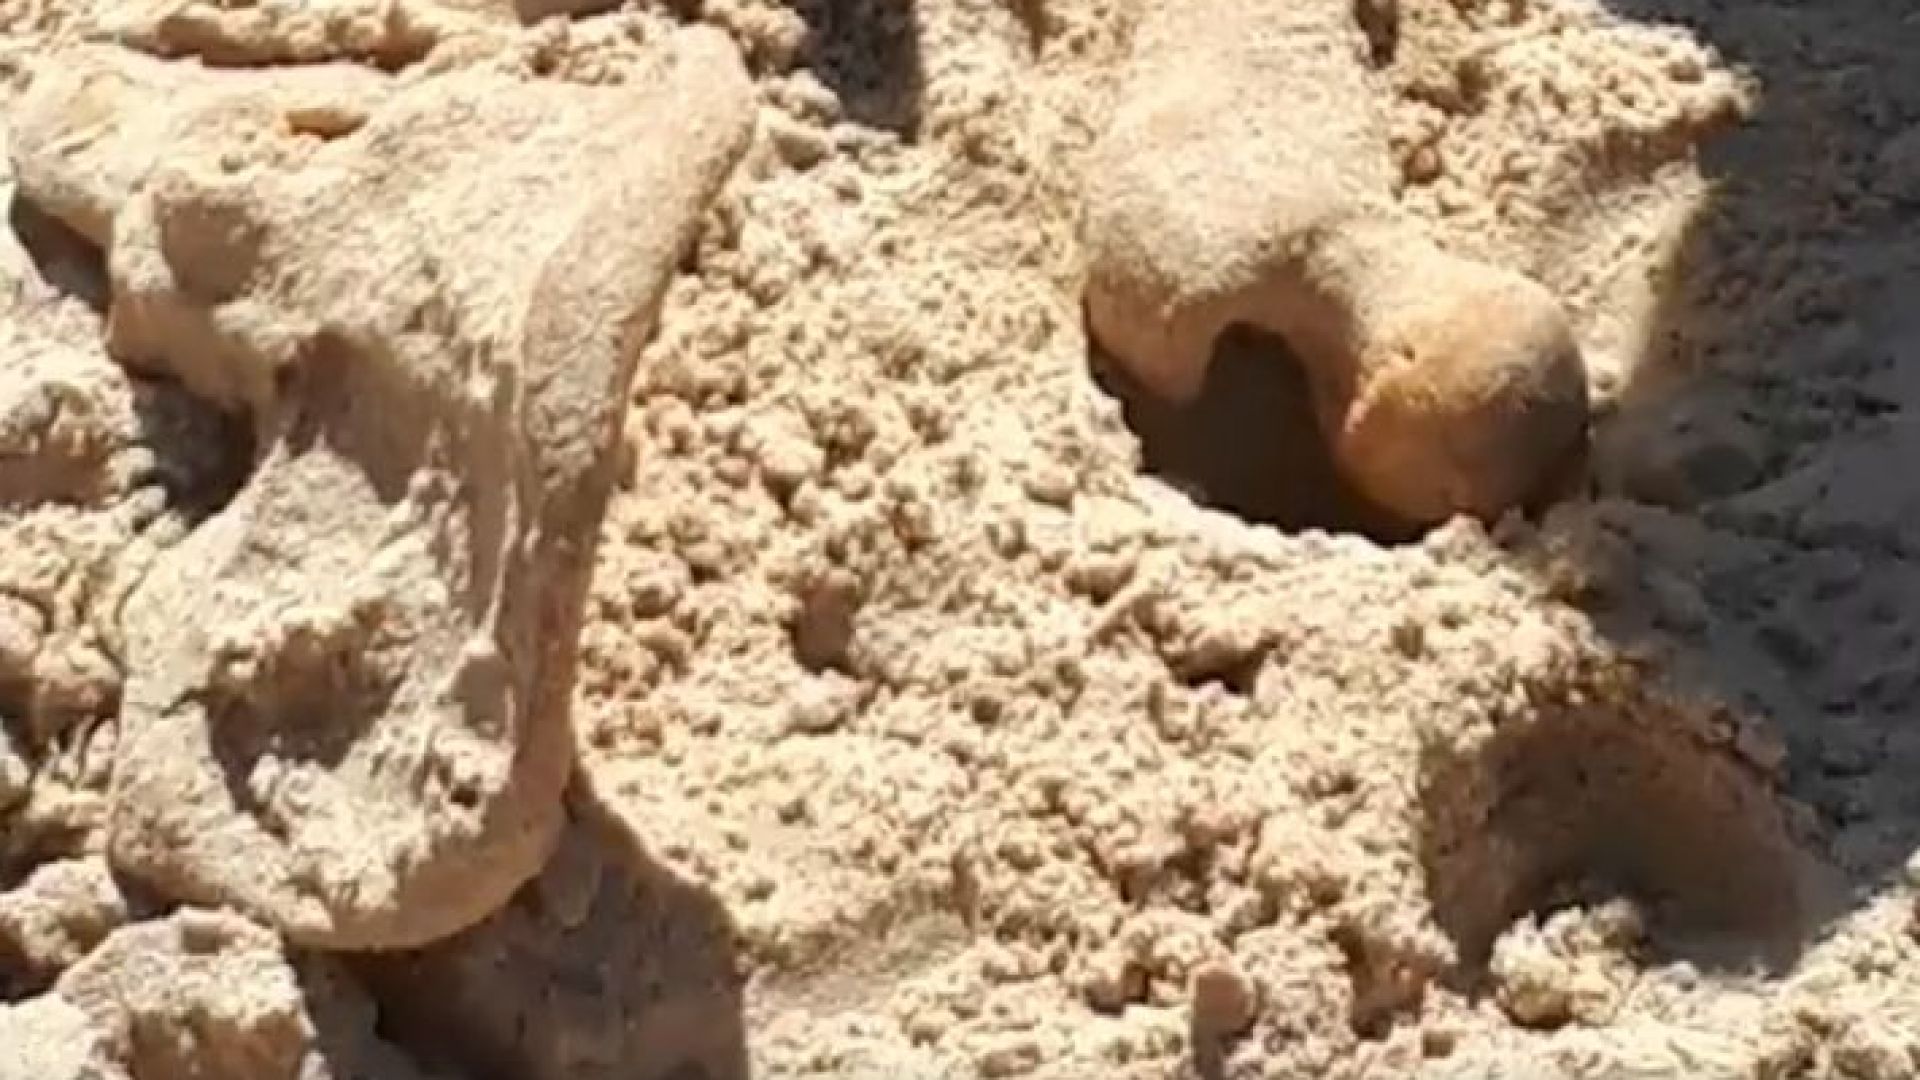 Деца откриха кости на плаж Атлиман в Китен. Най-вероятно останките